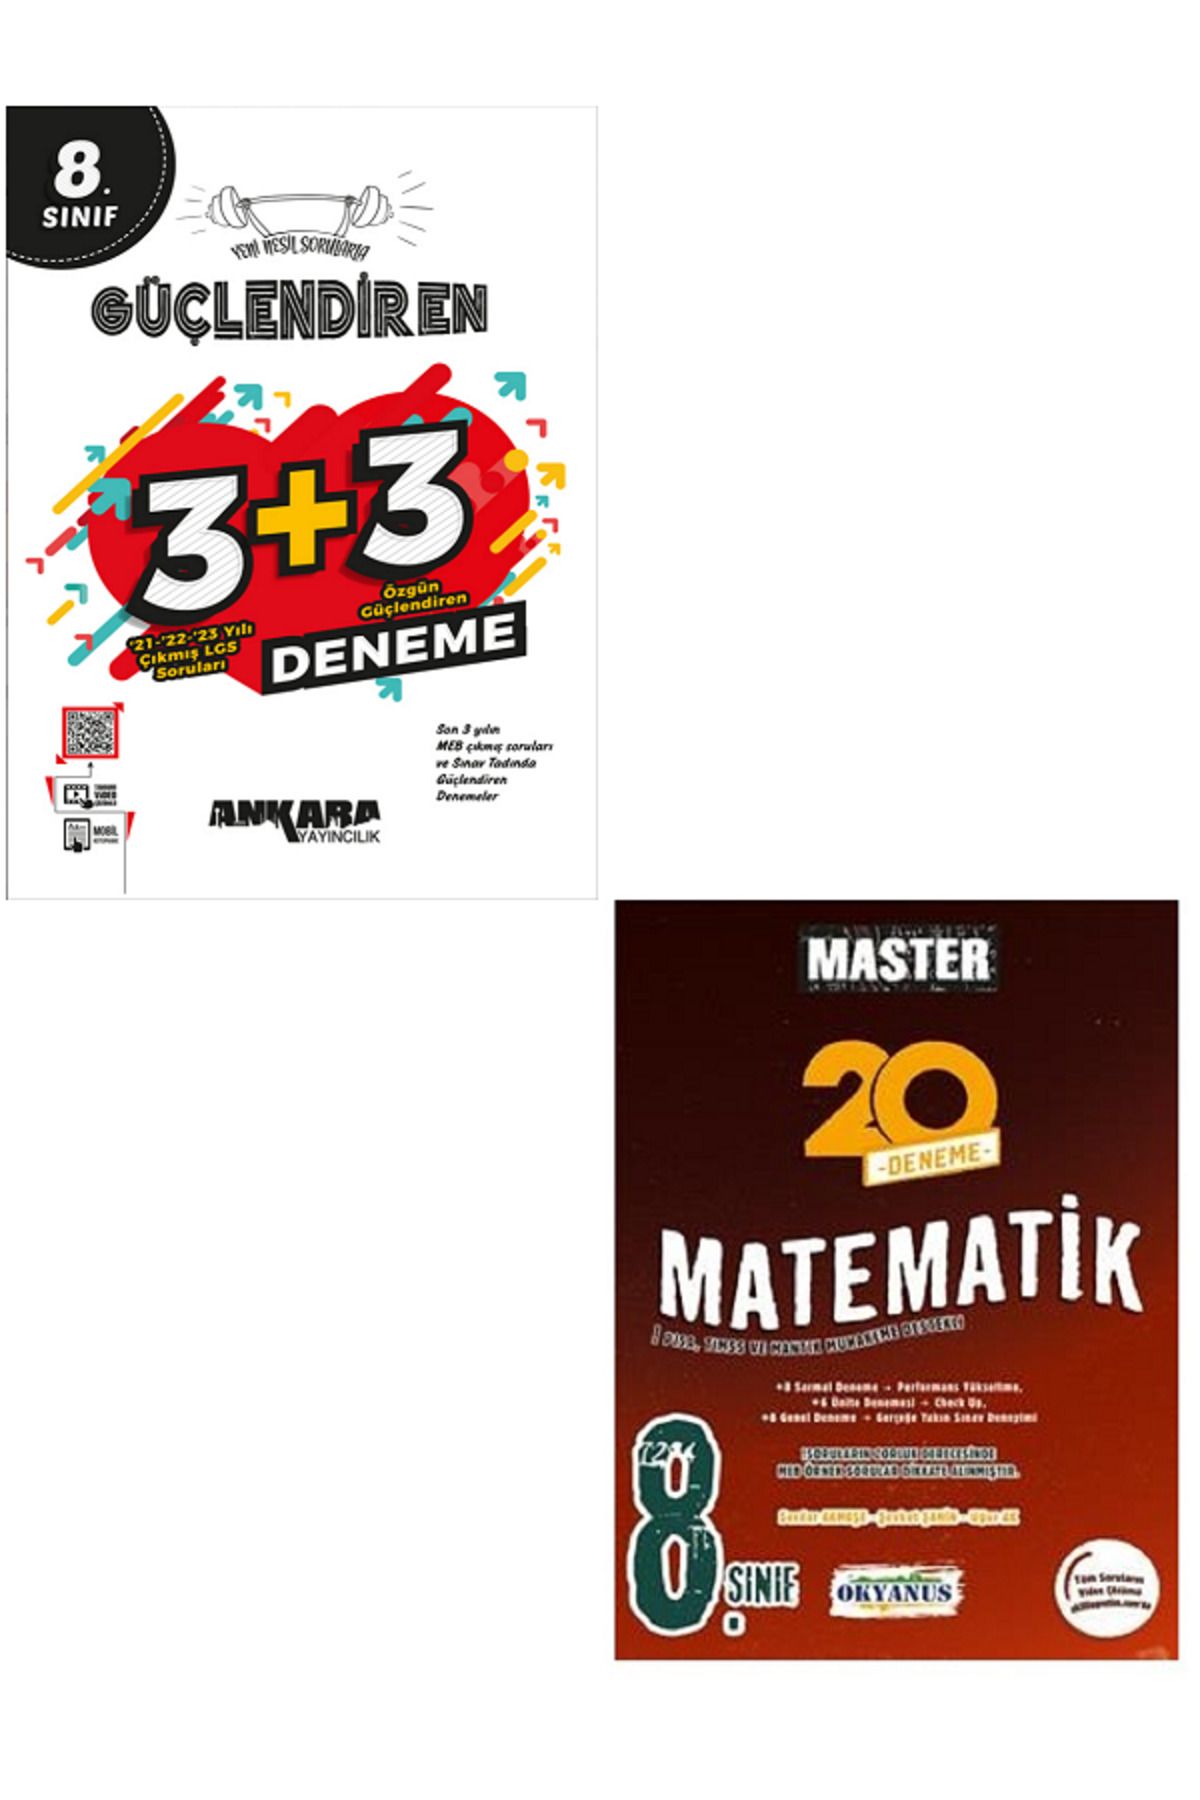 Açı Yayınları 8.Sınıf LGS Ankara Güçlendiren 3+3 Deneme + 8.Sınıf Okyanus Master 20'Li Matematik Deneme 2 KİTAP